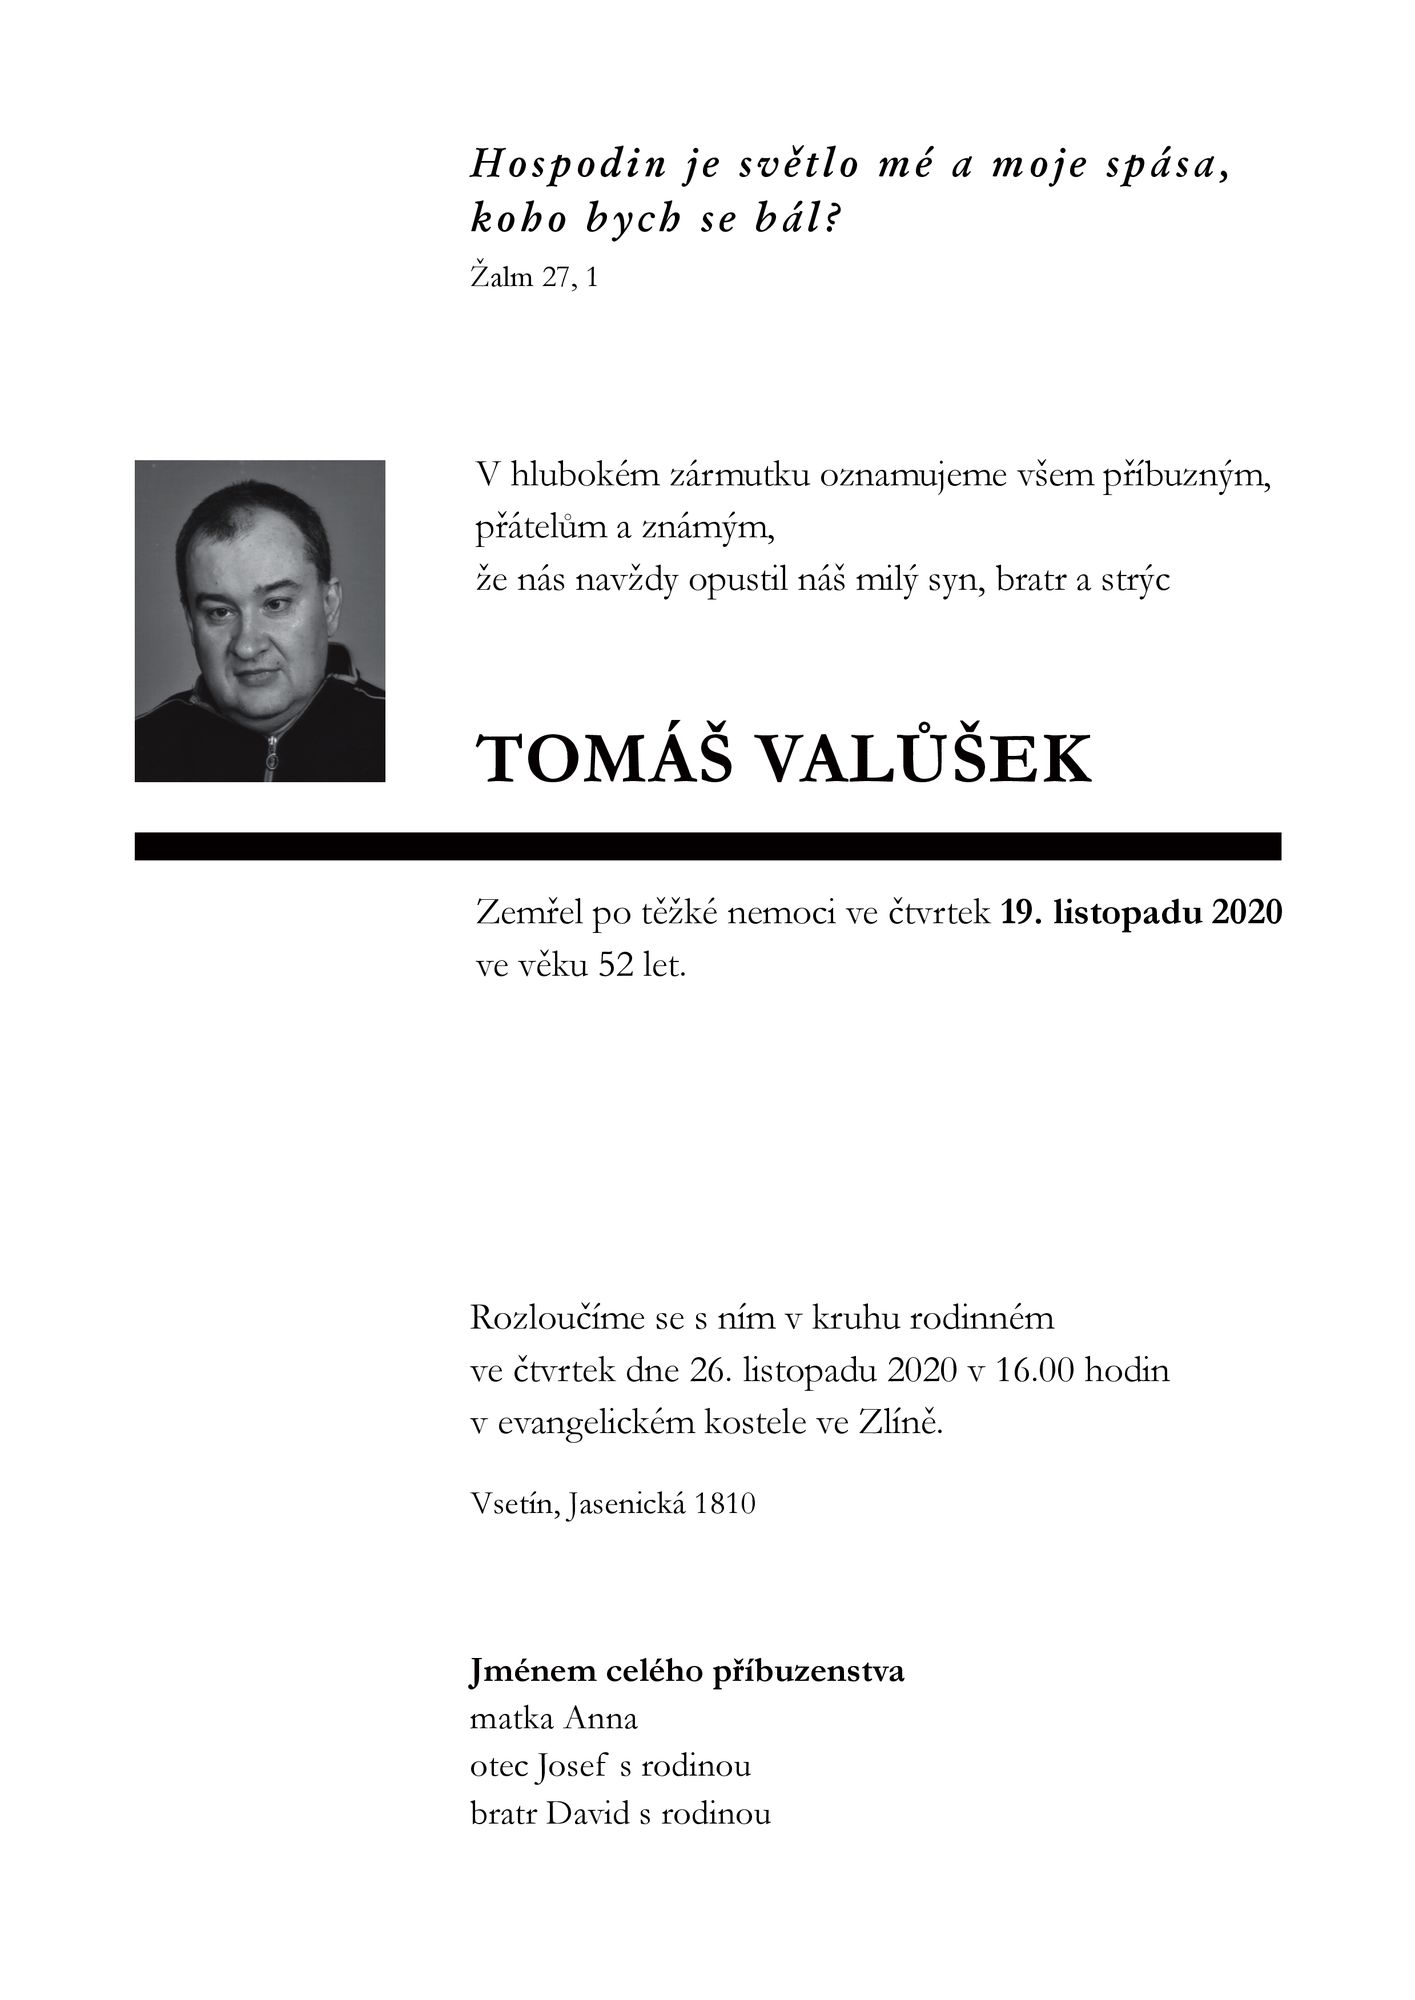 Tomáš Valůšek